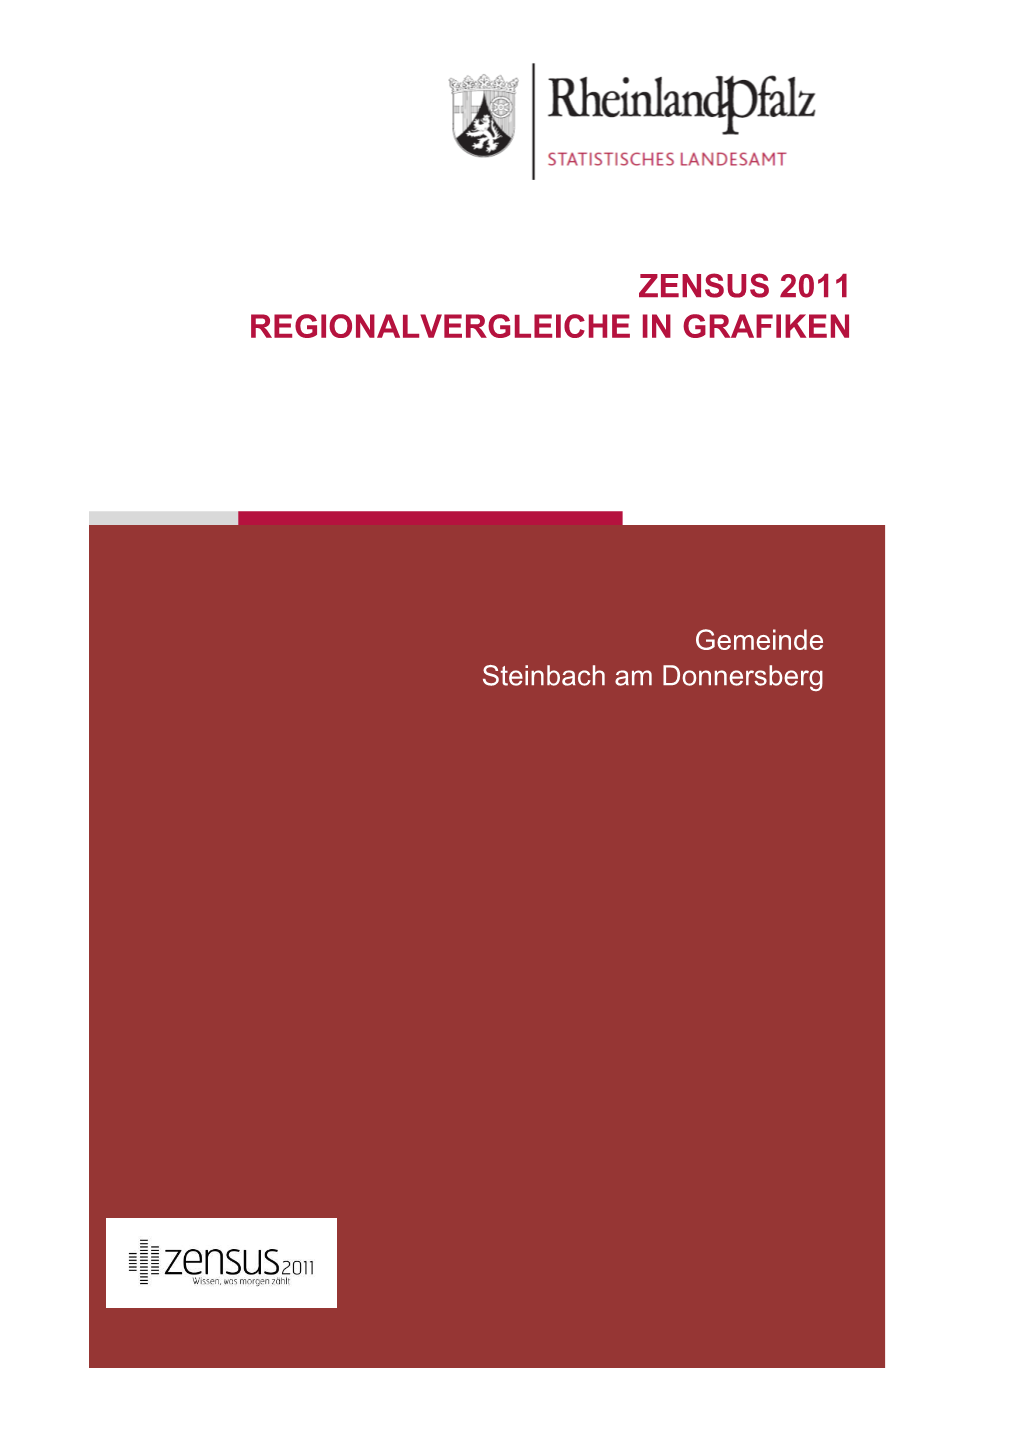 Regionalvergleiche in Grafiken Am 9. Mai 2011, Steinbach